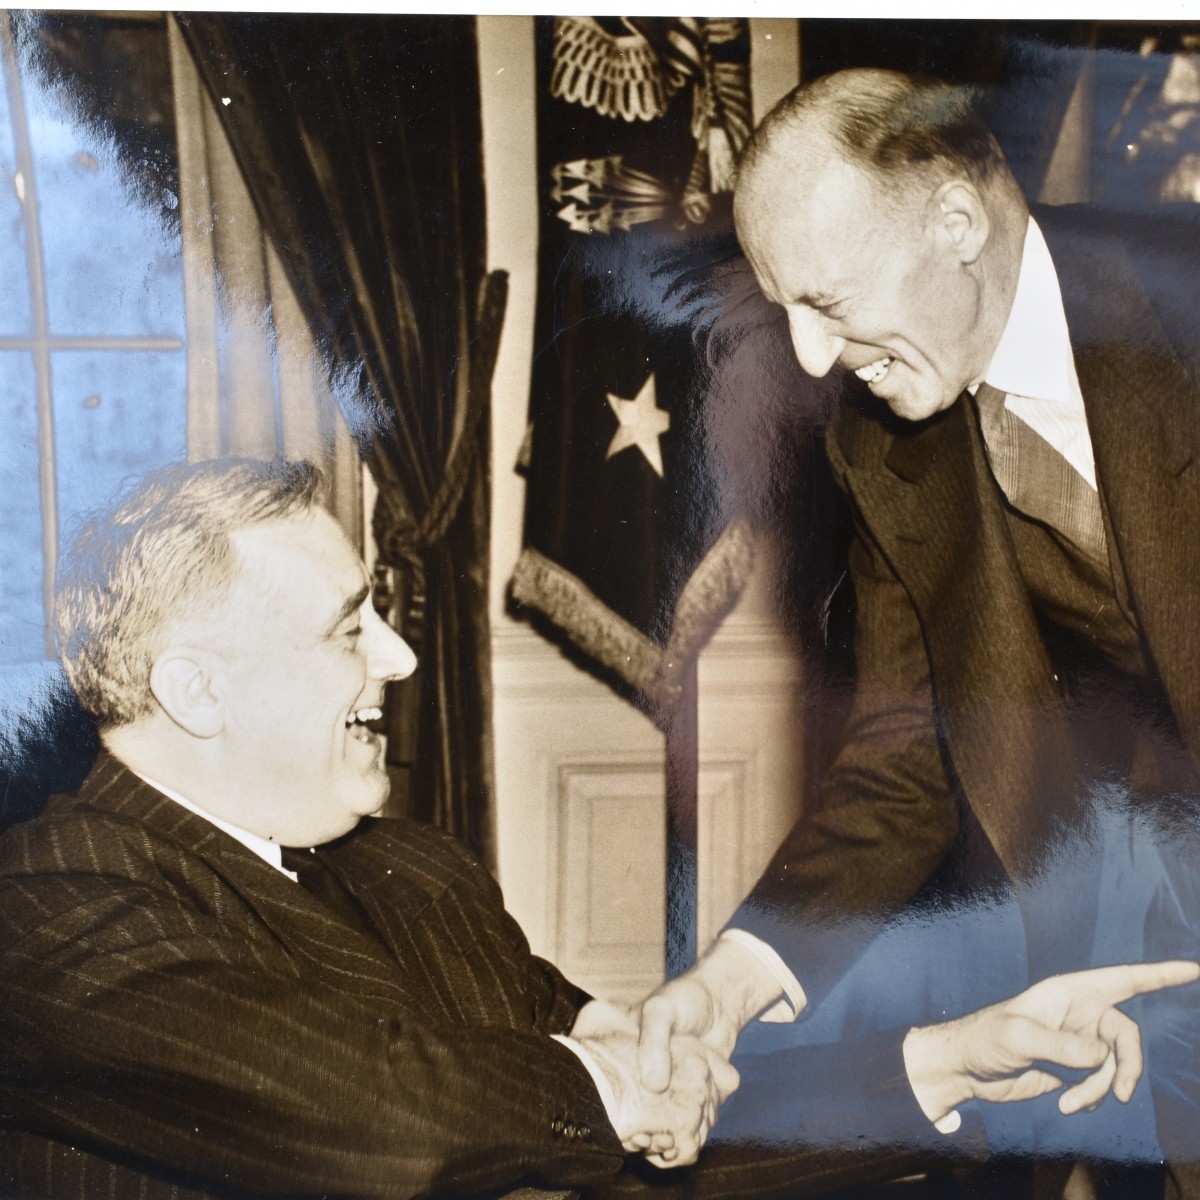 Franklin D. Roosevelt Photographs